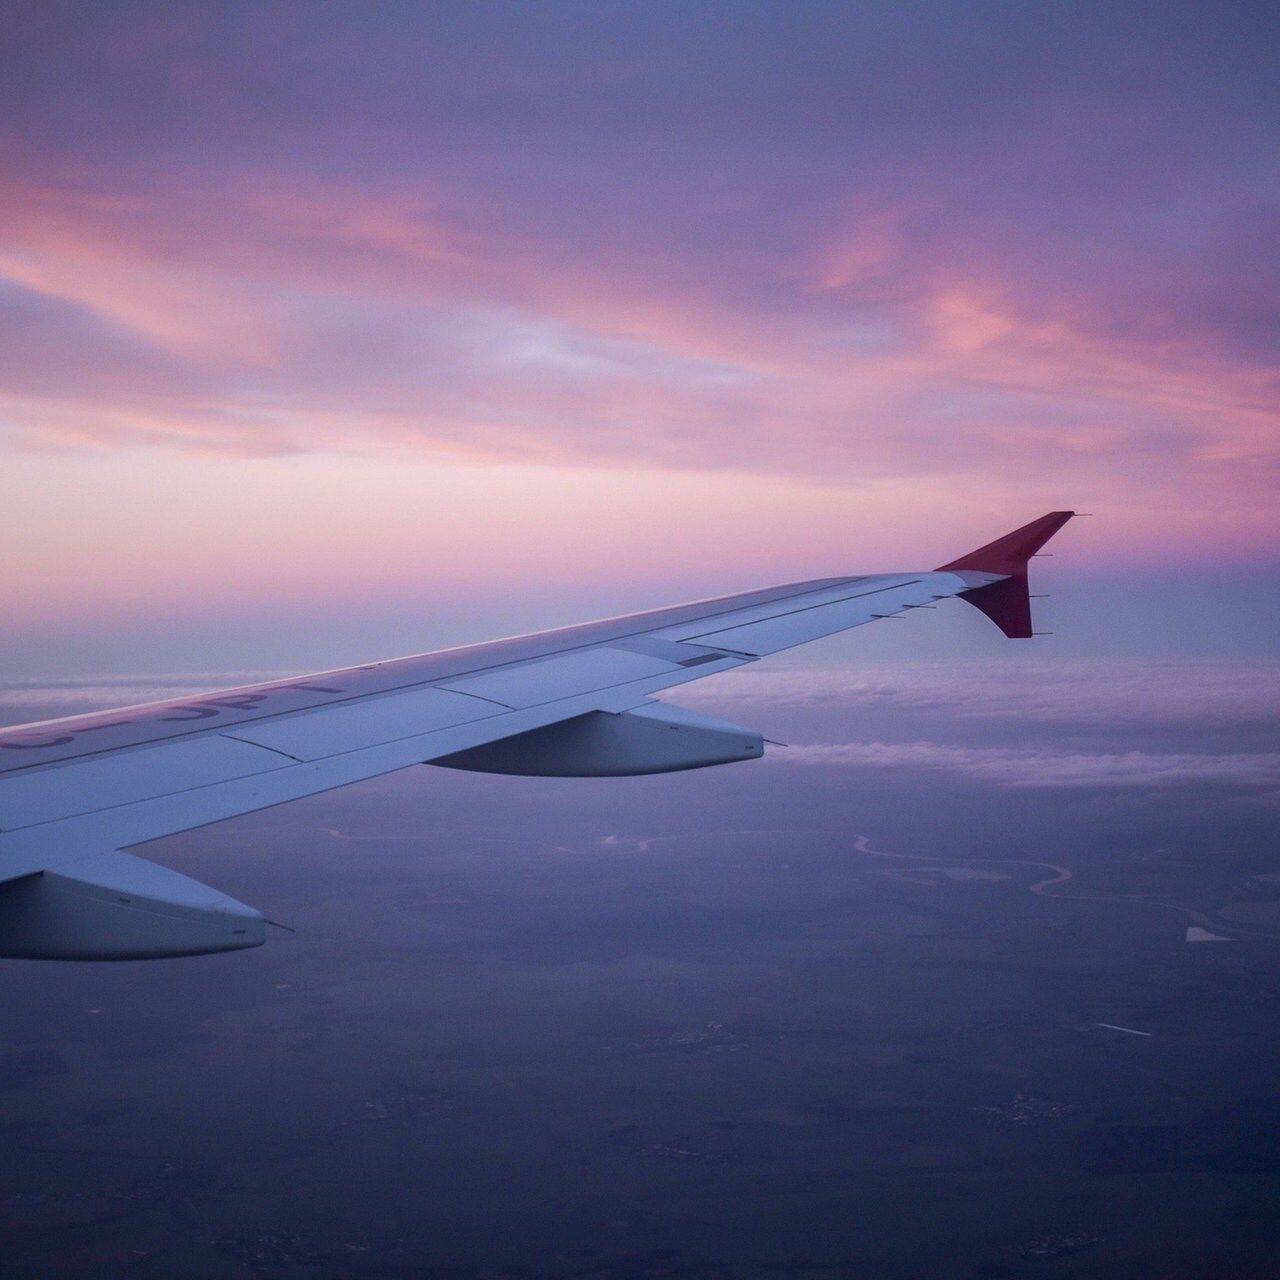  Reisen Hintergrundbild 1280x1280. Problem für Luftfahrt: Klimawandel verstärkt Turbulenzen